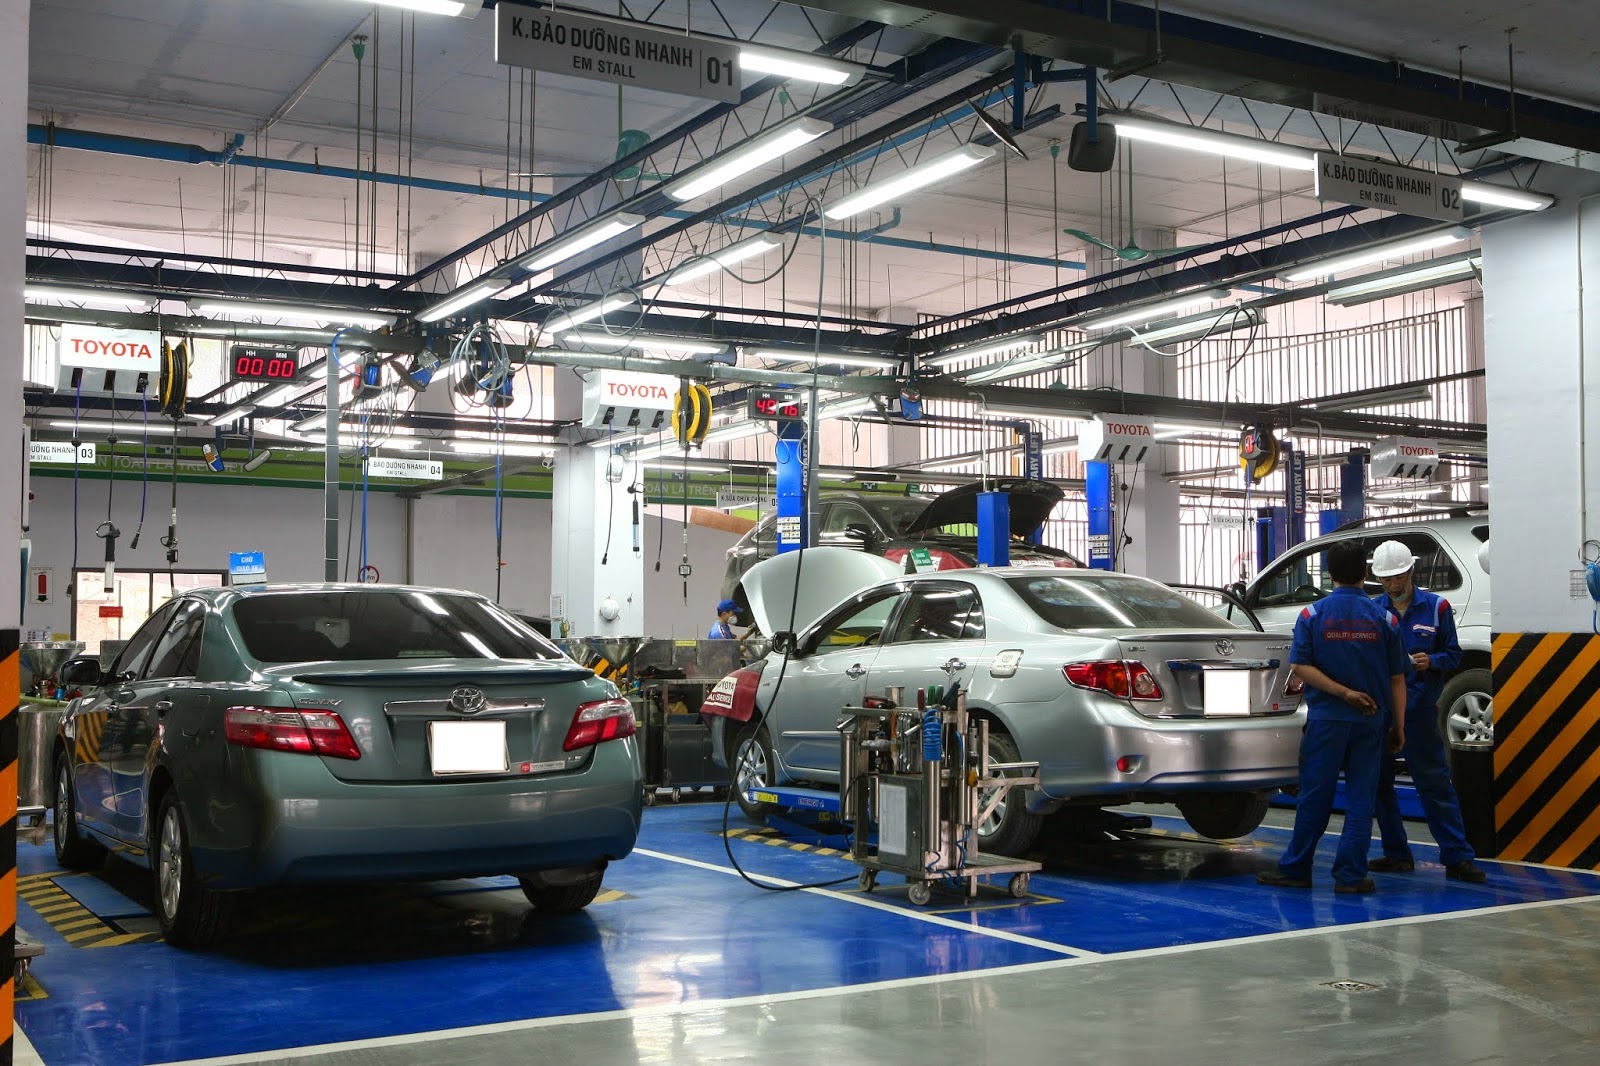 Tư vấn thiết kế xưởng sửa chữa ô tô chuyên nghiệp, hiện đại - Phần mềm ...